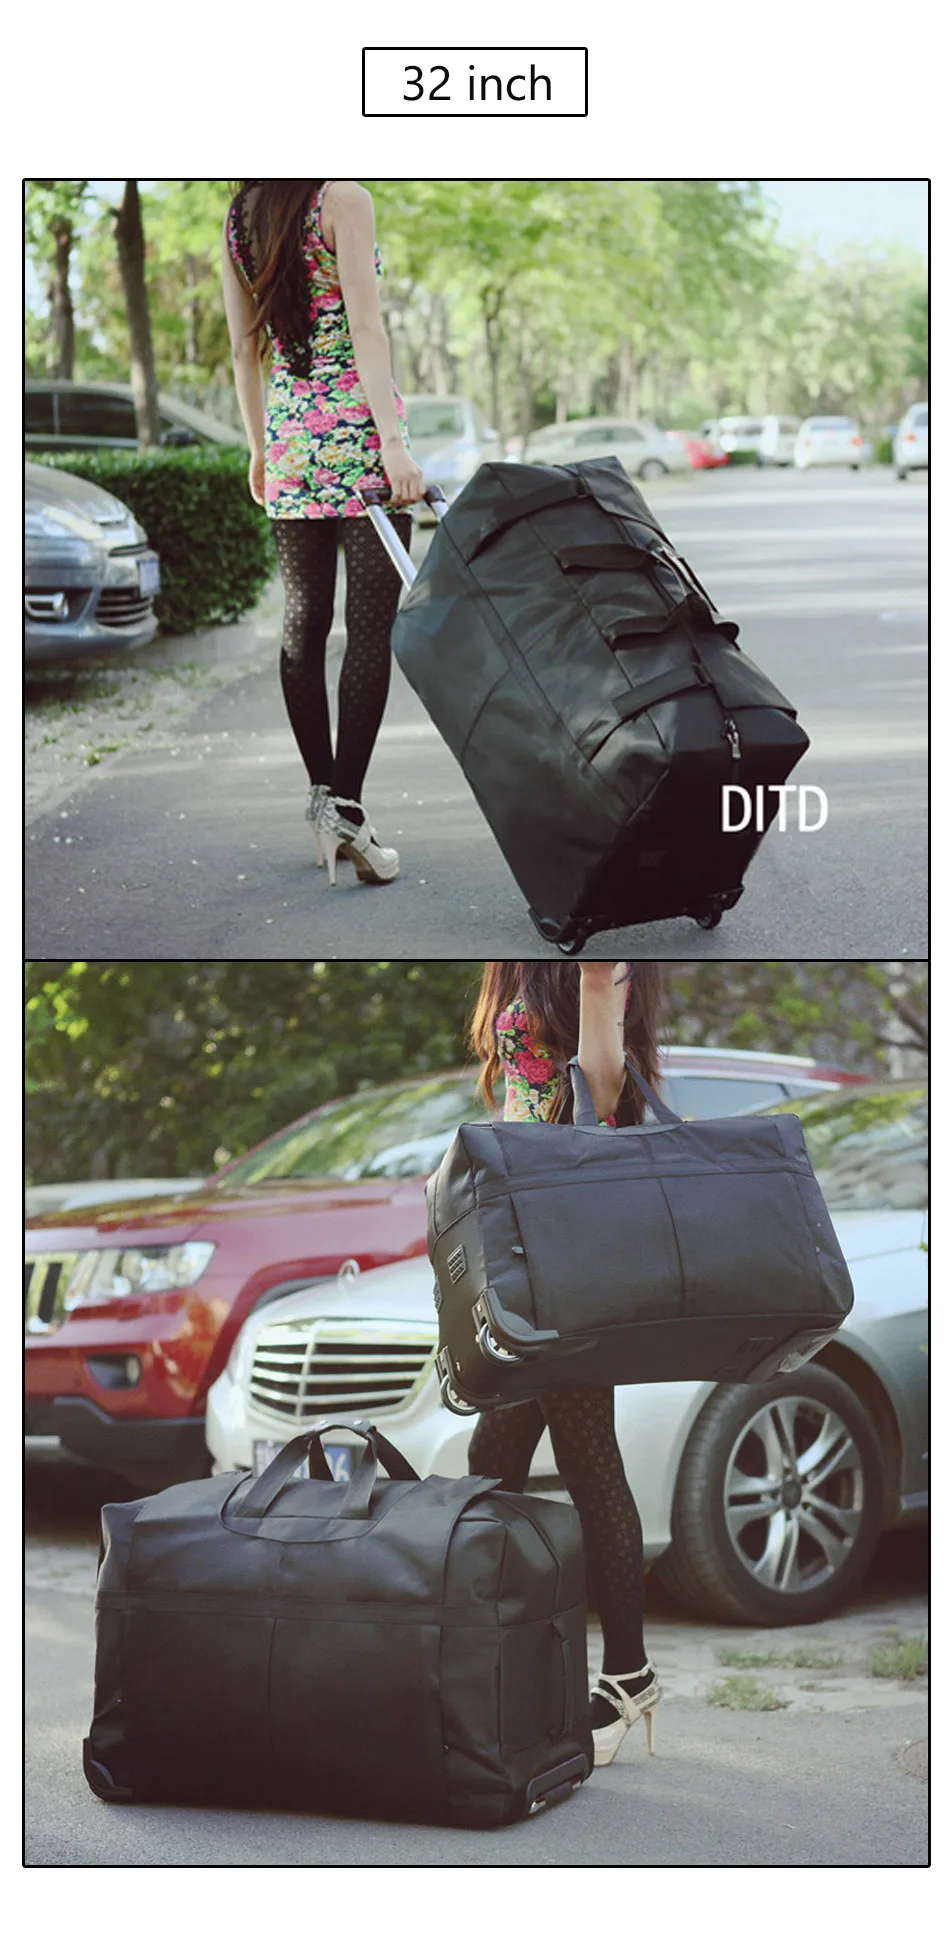 DITD 2" 28" 3" большой водонепроницаемый вещевой мешок сумка на колесиках складной нейлоновый чемодан на колесиках дорожная сумка проверенный ручной Багаж